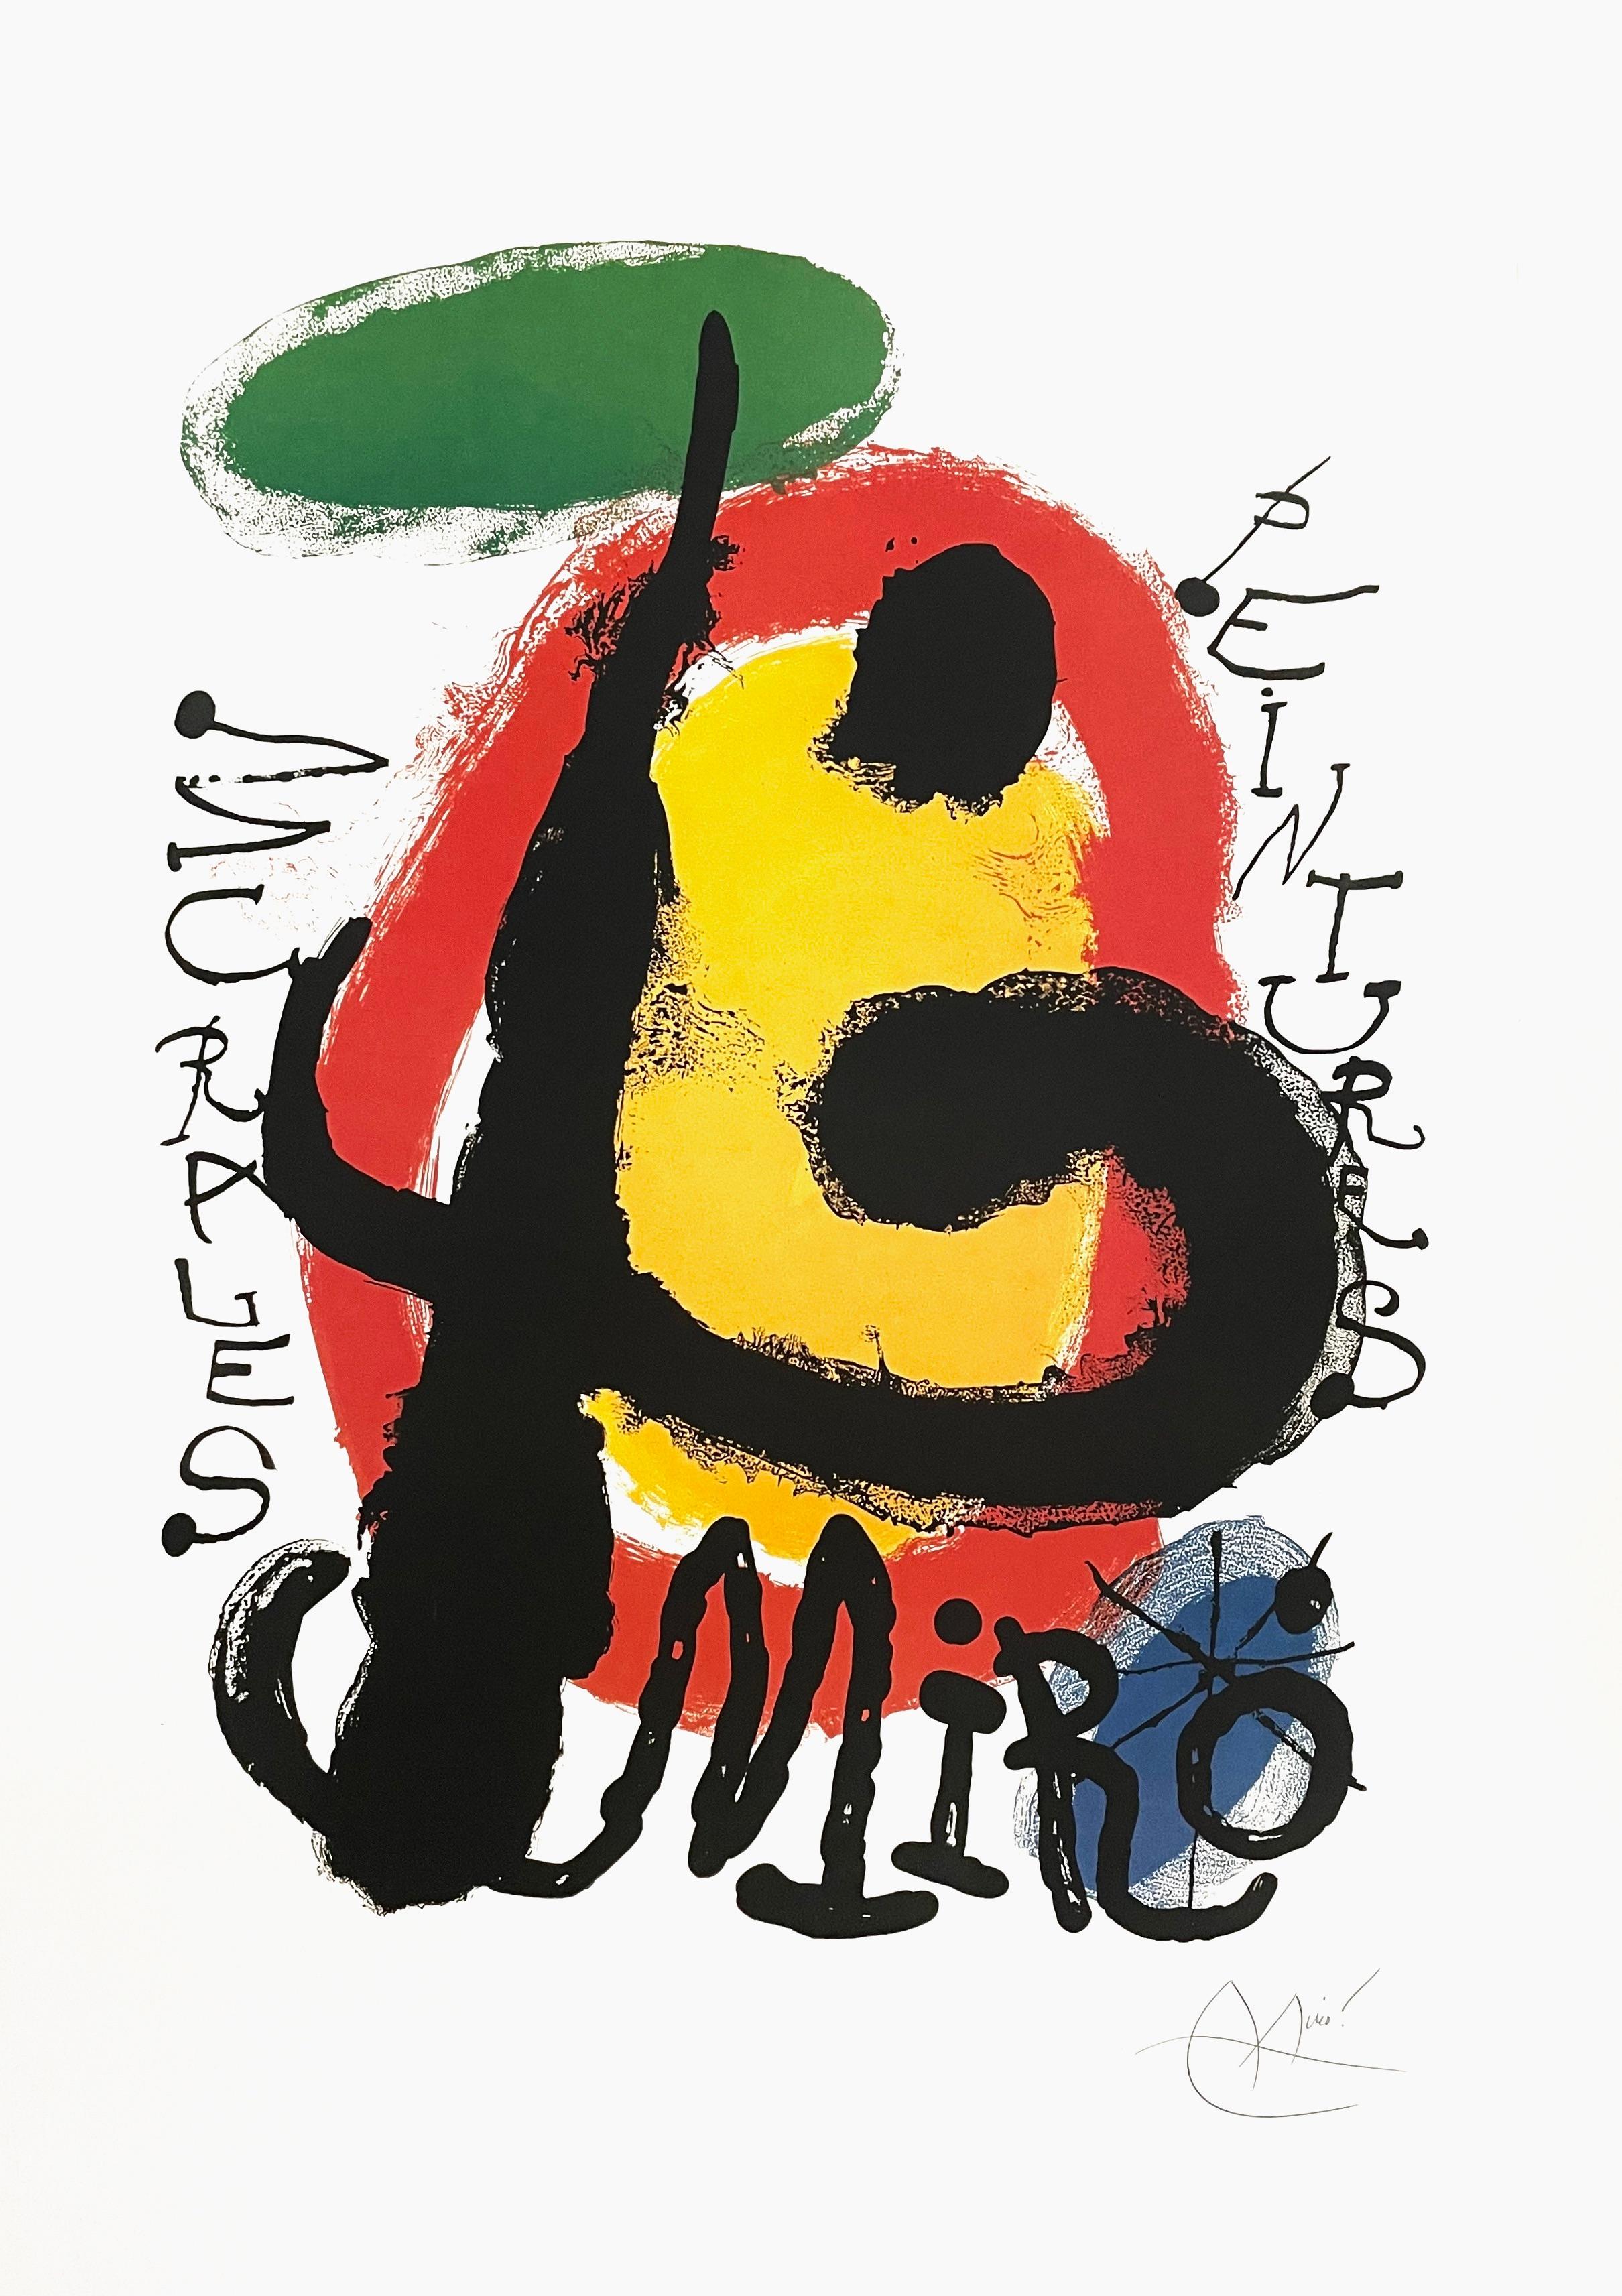 Joan Miró Abstract Print - Miro, Murales Peintures, 1961 Galerie Maeght